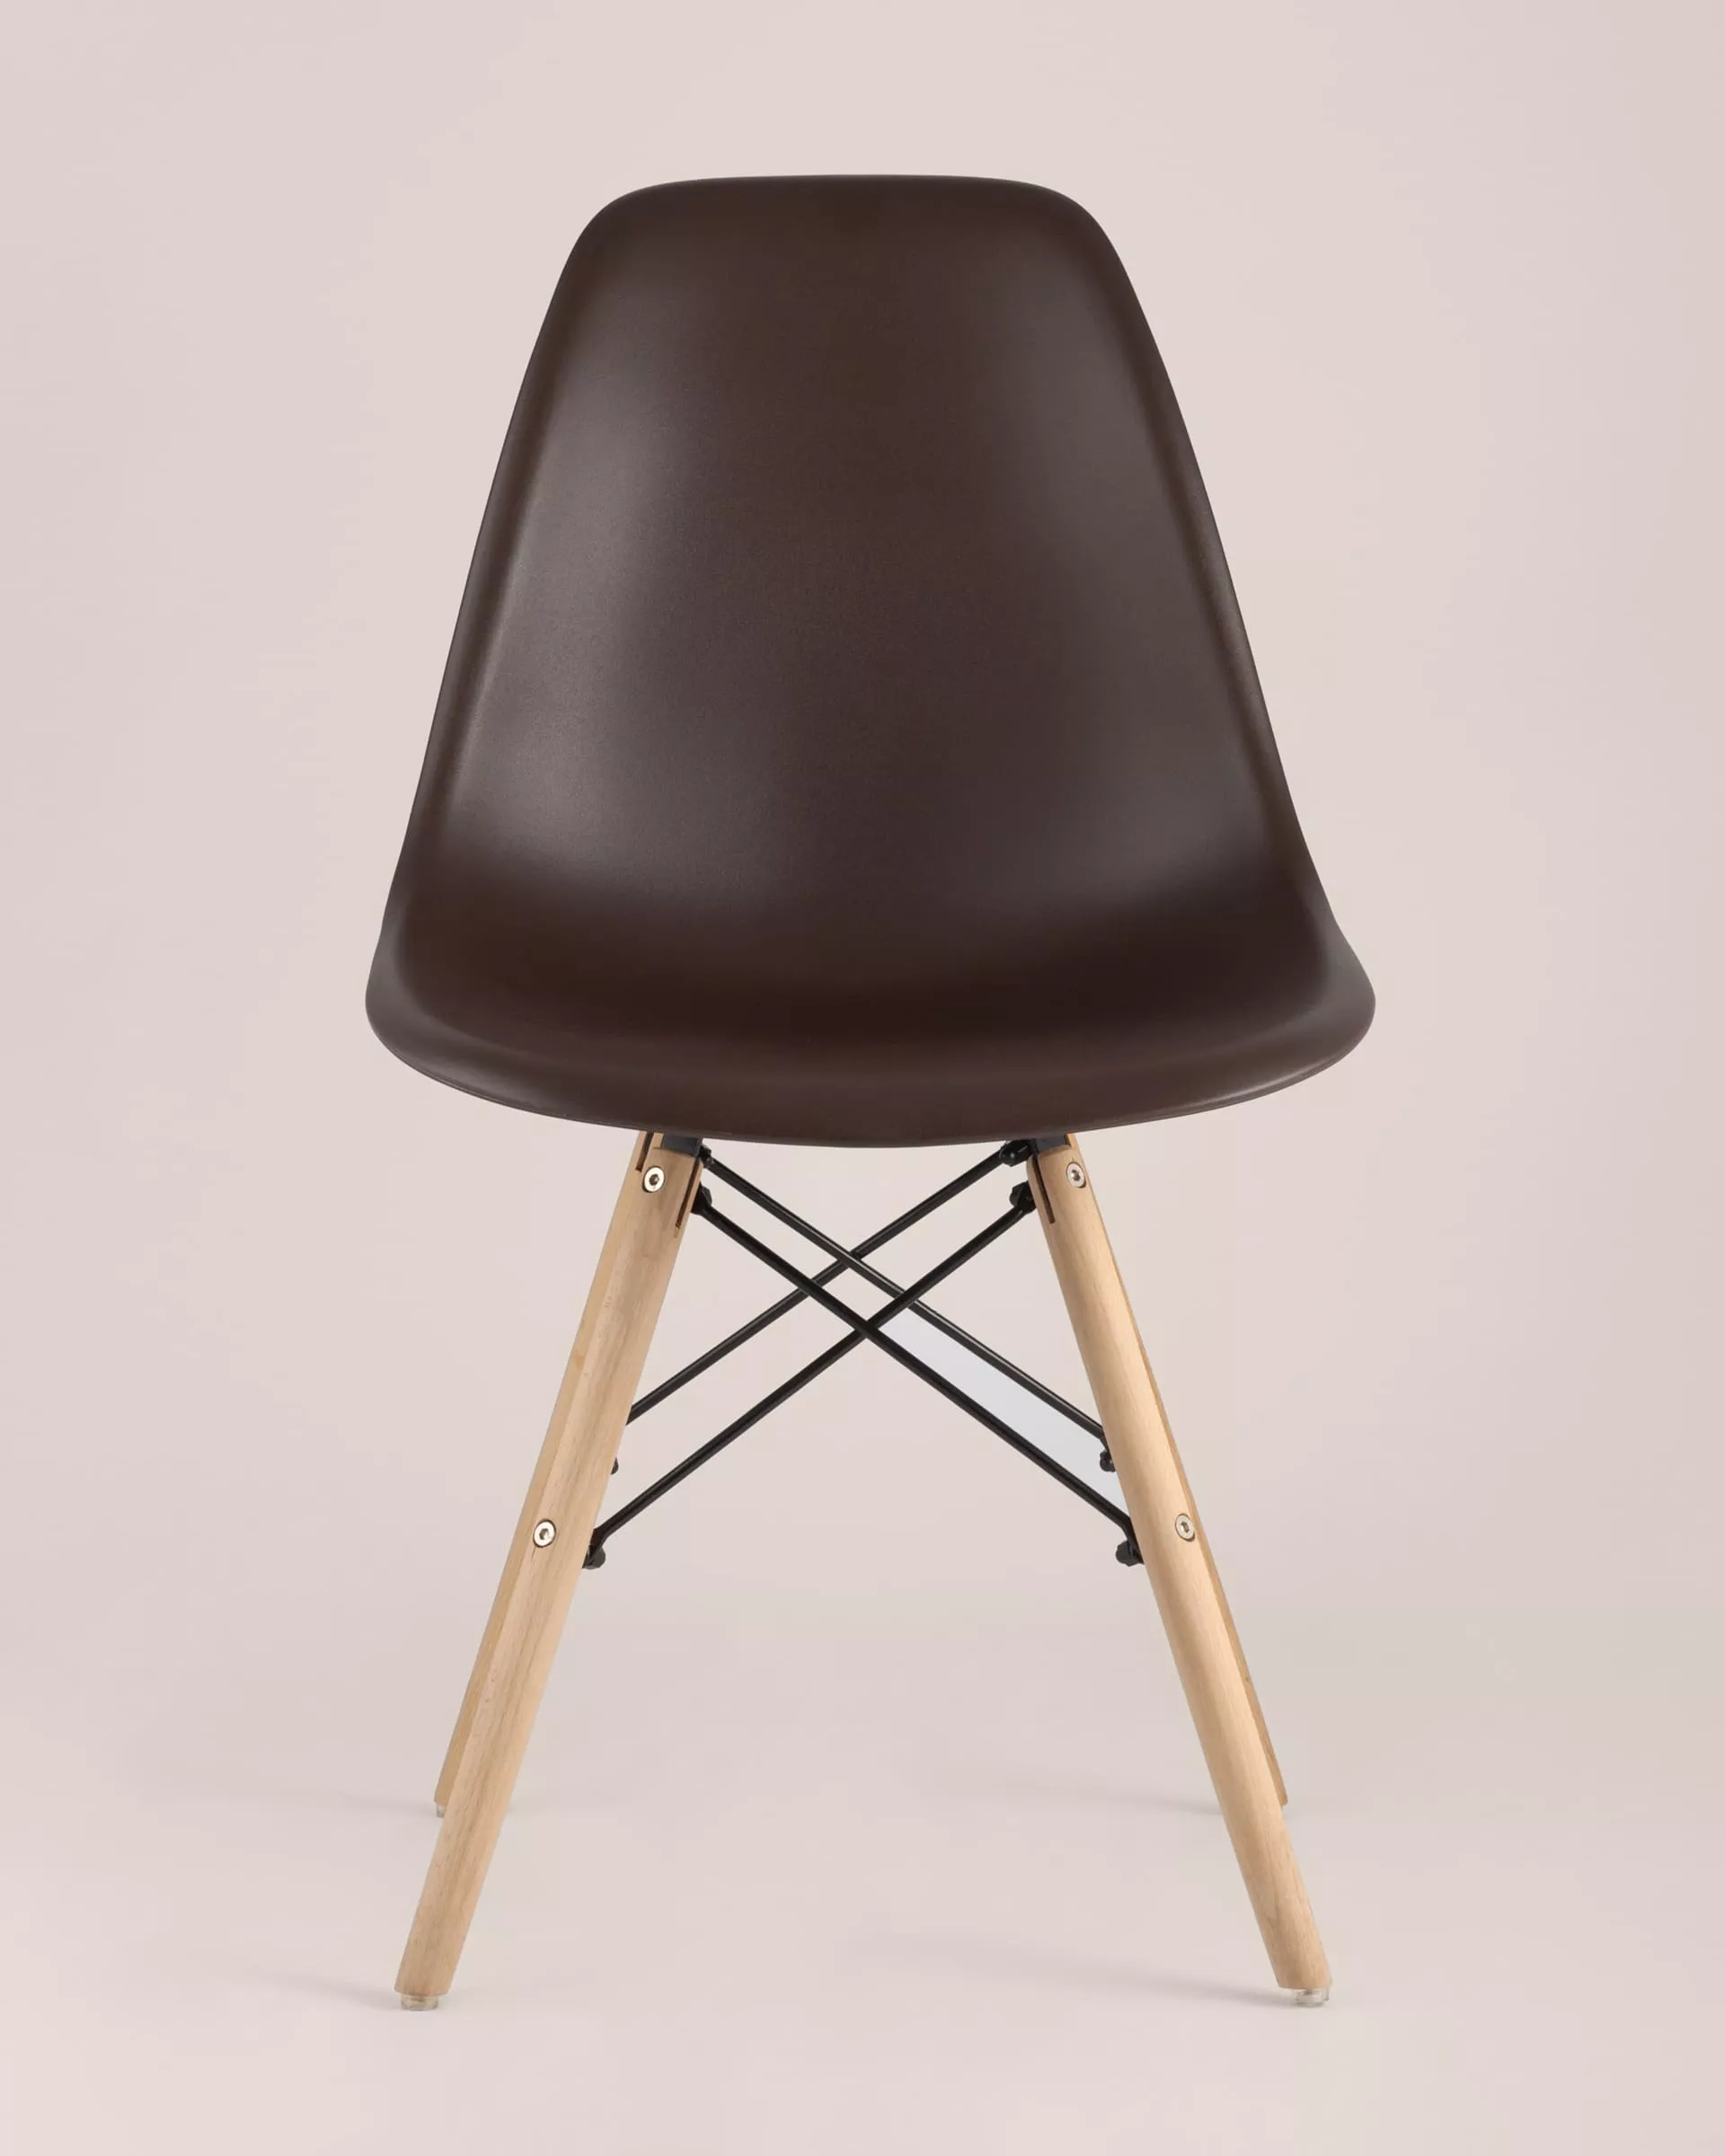 Комплект стульев Eames DSW коричневый x4 шт